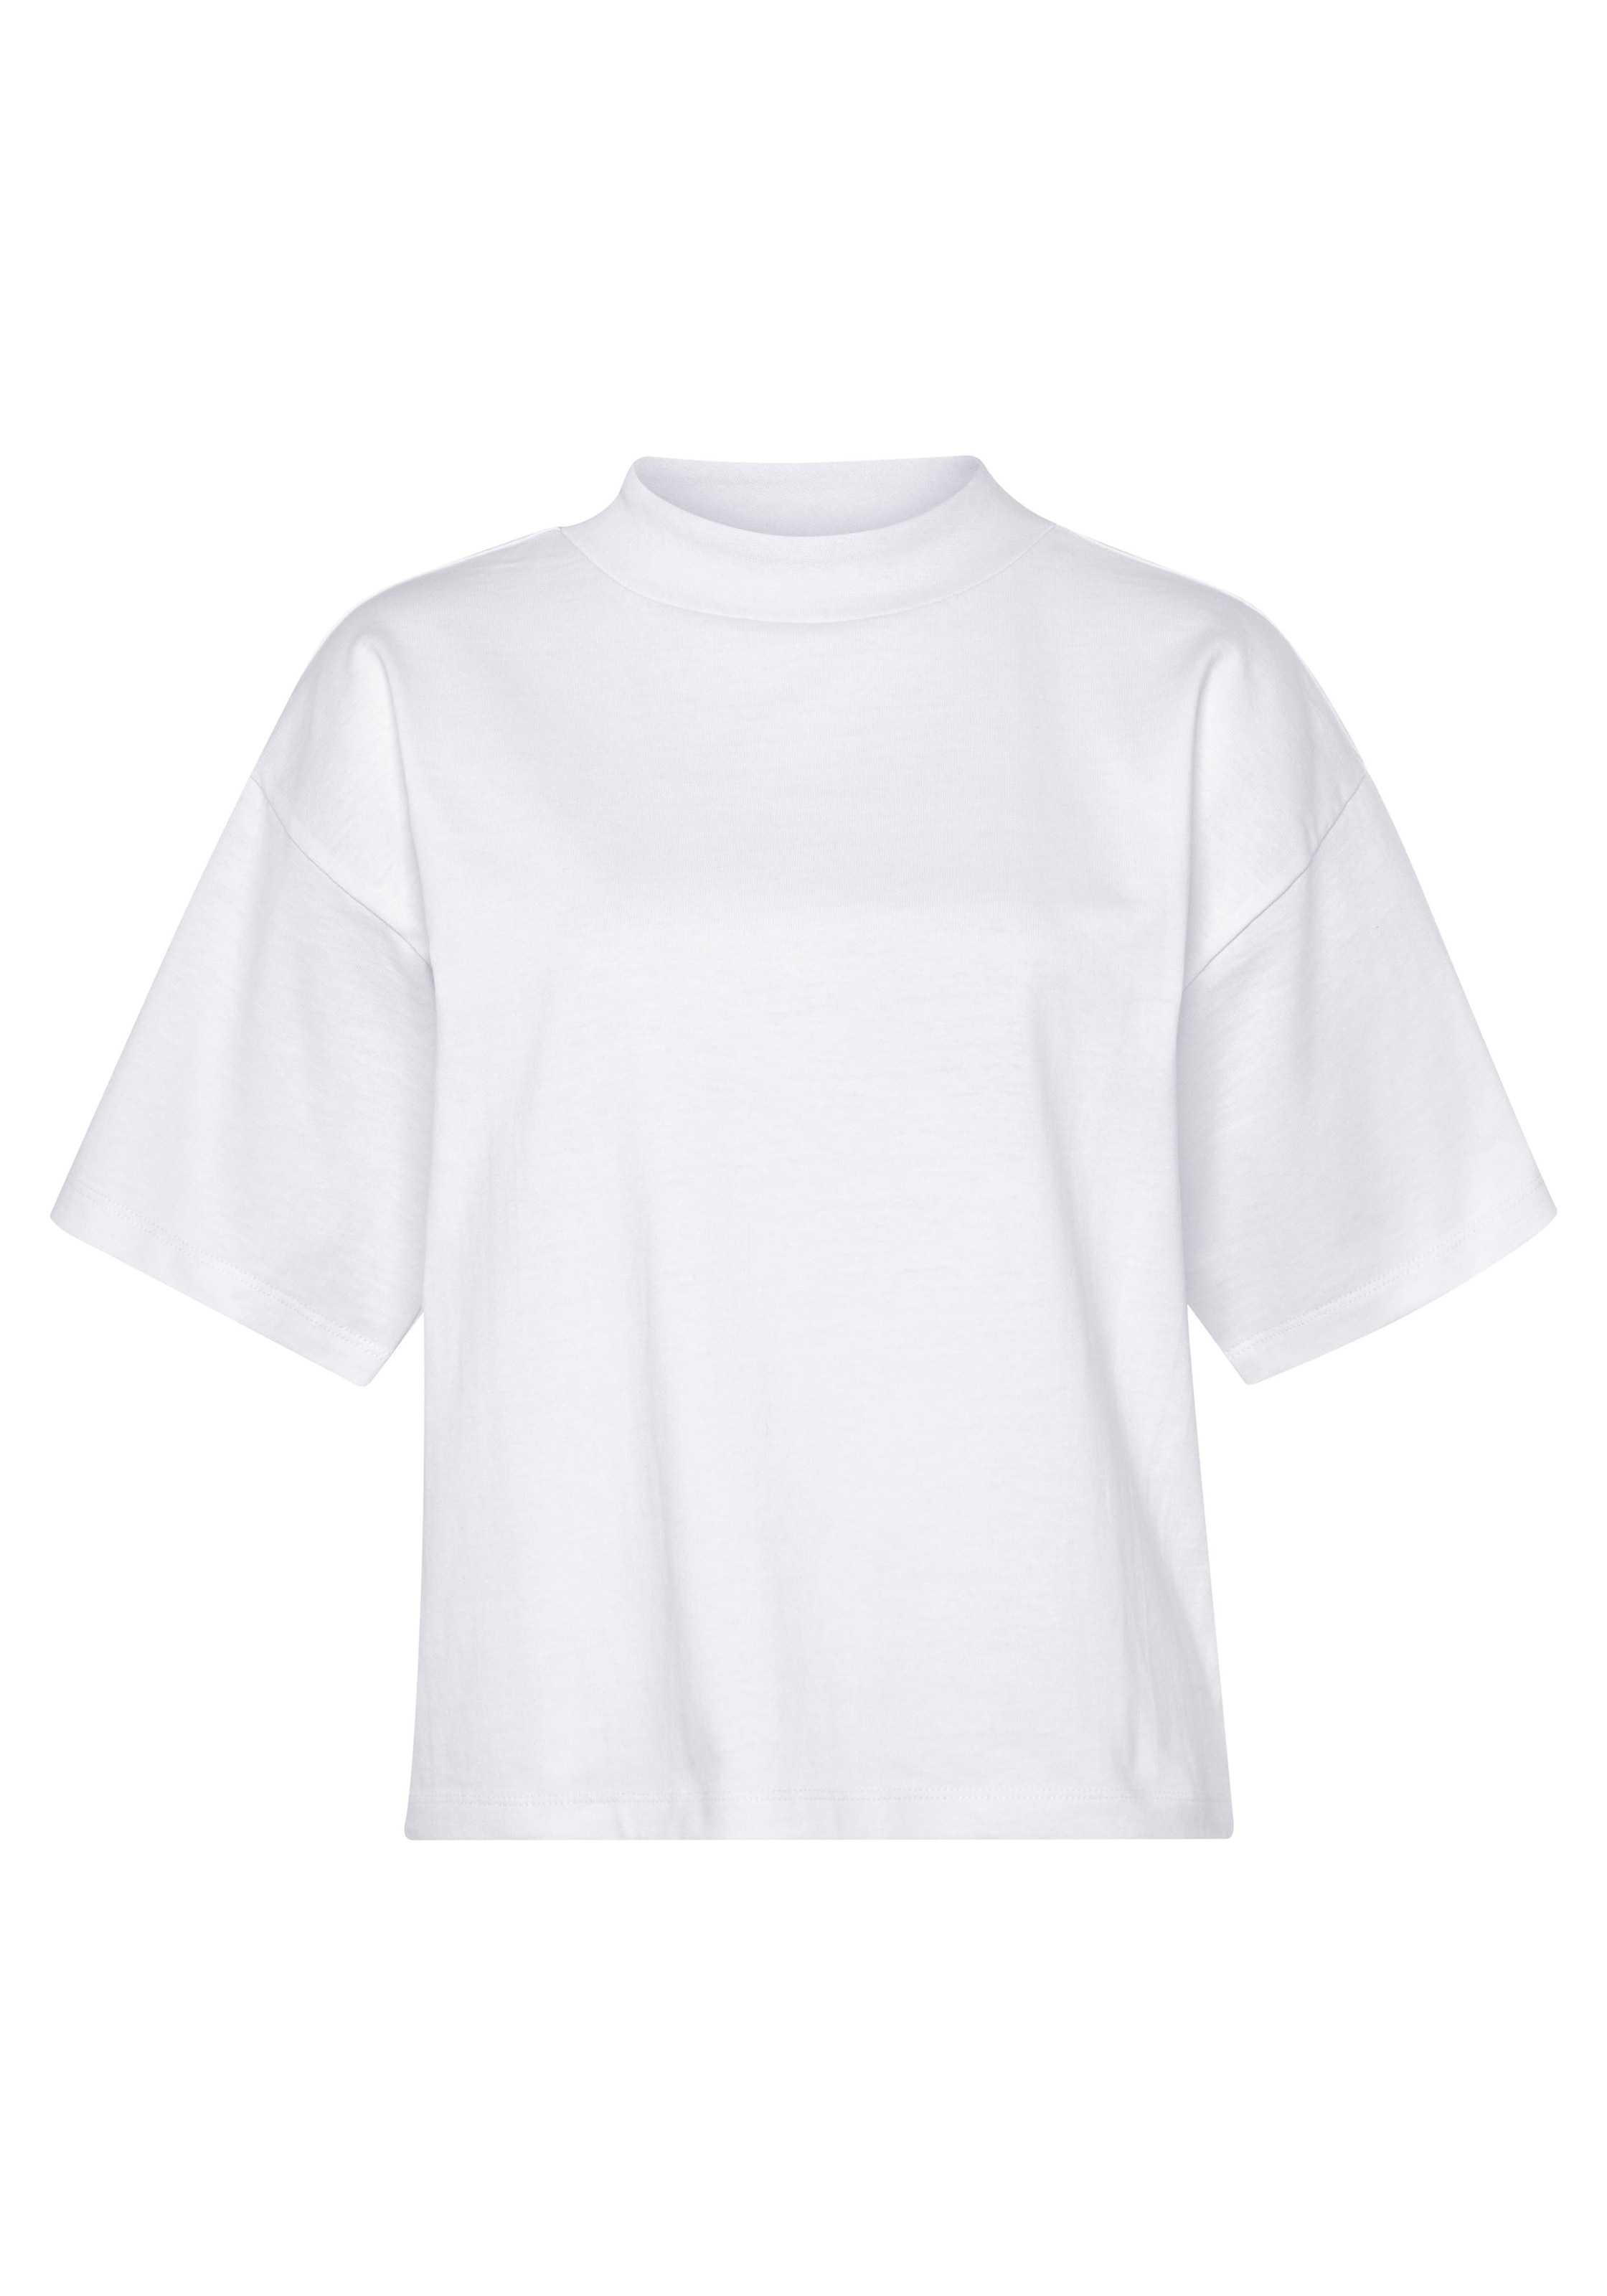 mit | Oversize-Shirt, AJC walking breitem I\'m kaufen modisch Rippen-Rundhalsausschnitt